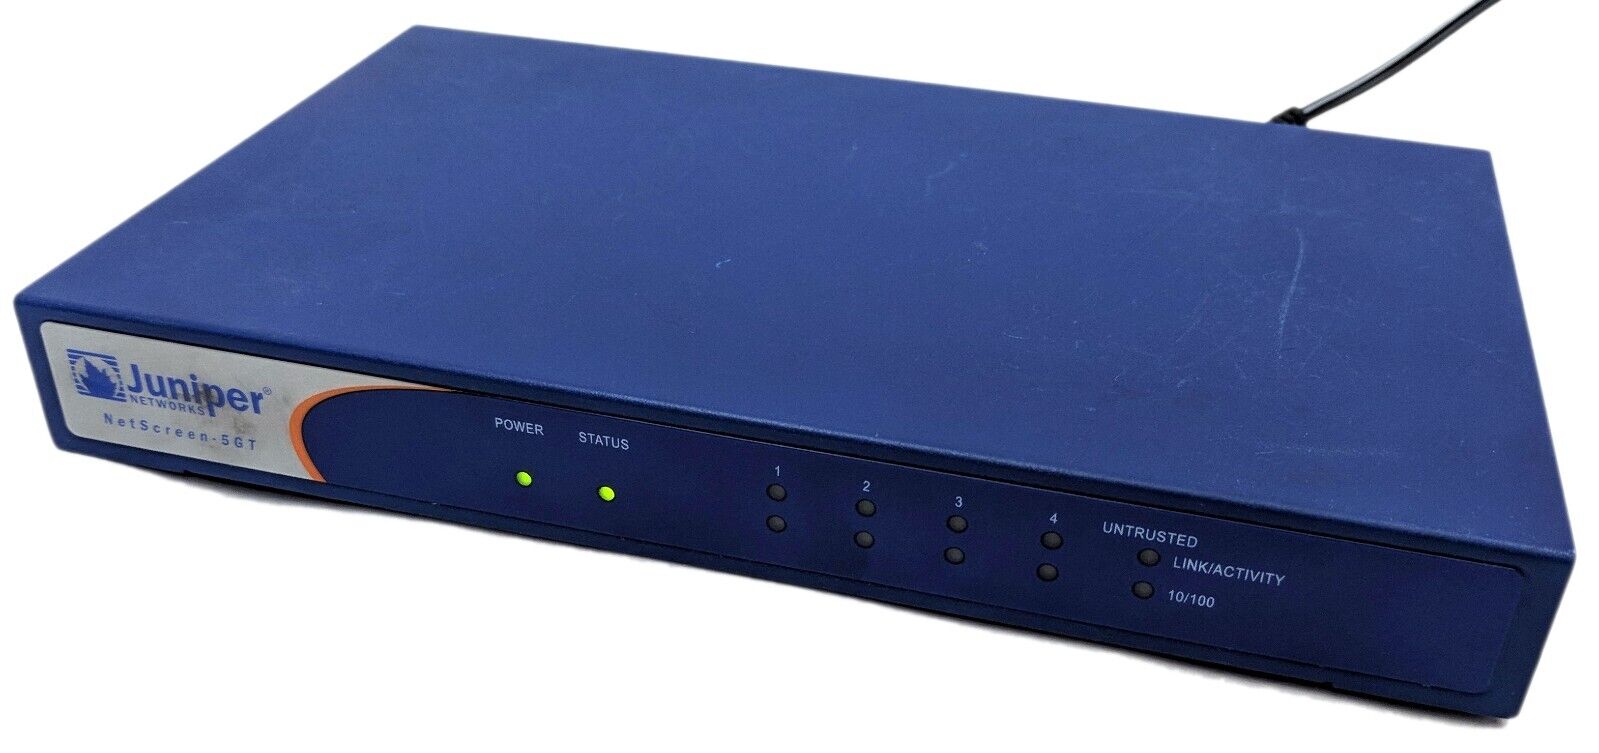 Juniper Networks NetScreen-5GT Firewall Network Security Appliance NS-5GT-101